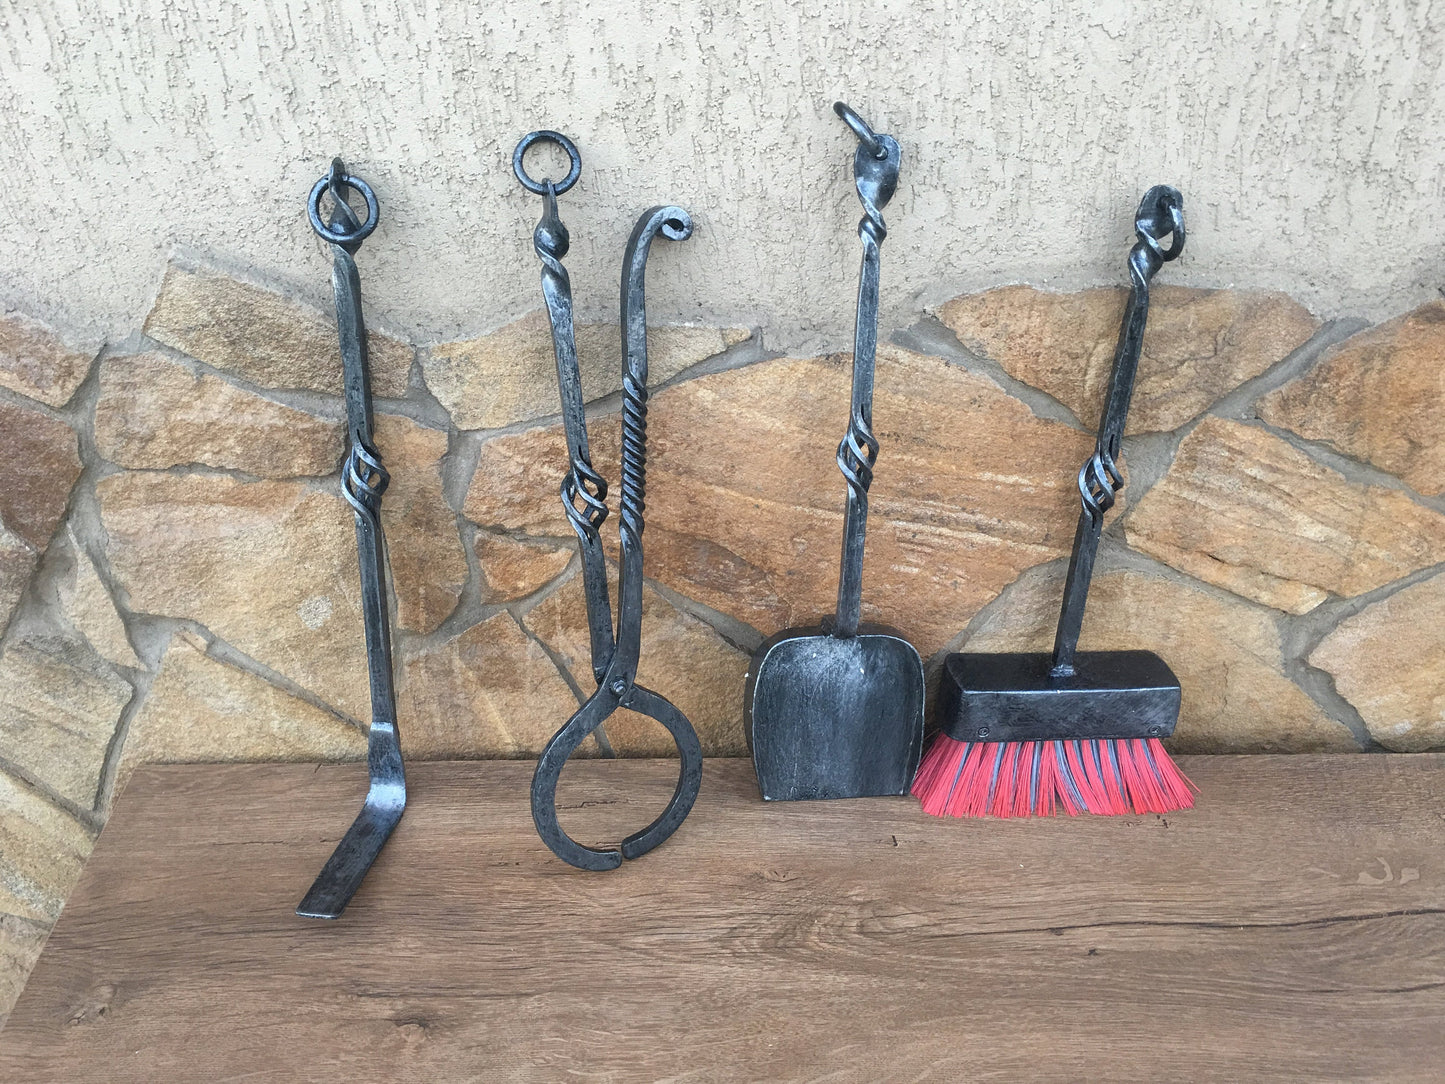 Fireplace tool set, fireplace tools, fireplace,  fireplace accessories, fireplace decor, fireplace cover, viking axe, axe, BBQ, iron gift